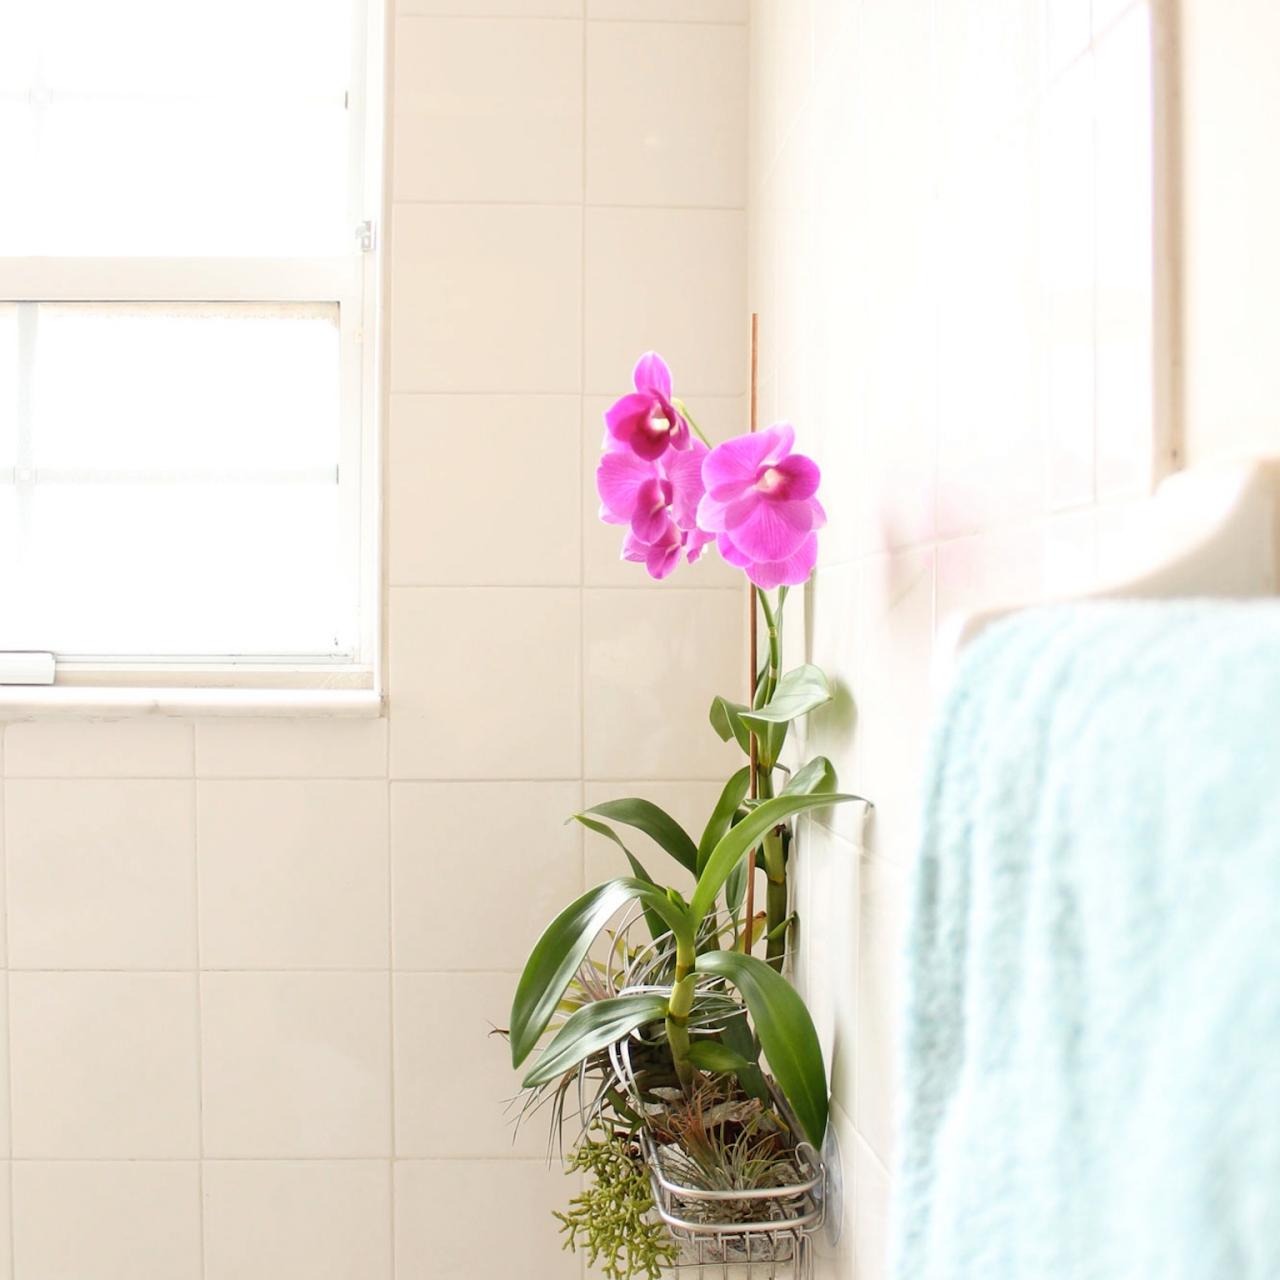 orquídea em espaço do box no banheiro